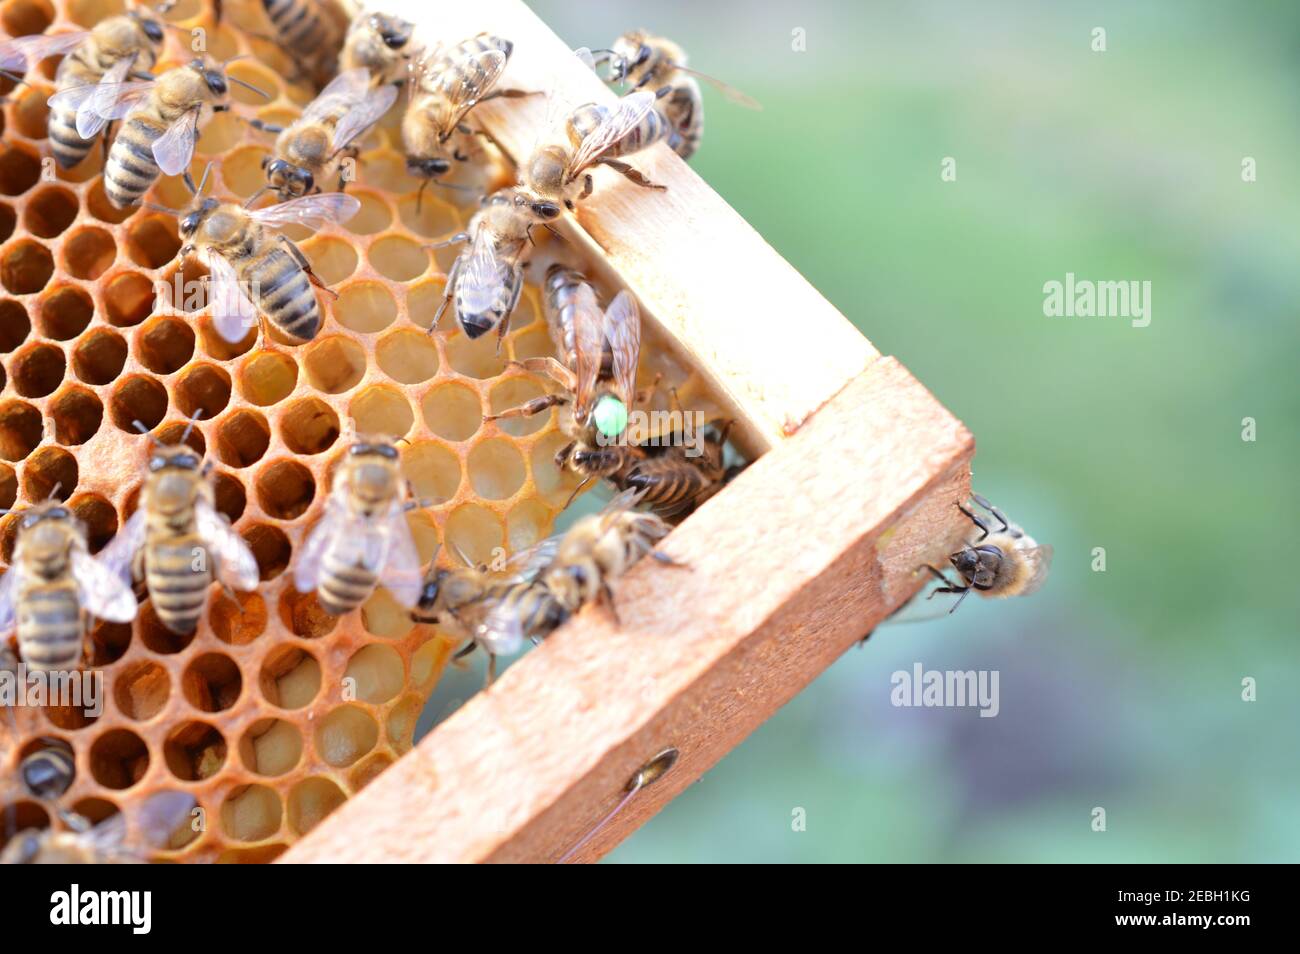 Buckfast queen Bee marqué d'un point vert pour l'année 2019 dans la ruche d'abeille avec son Carnica mélange de lignées abeille filles Banque D'Images